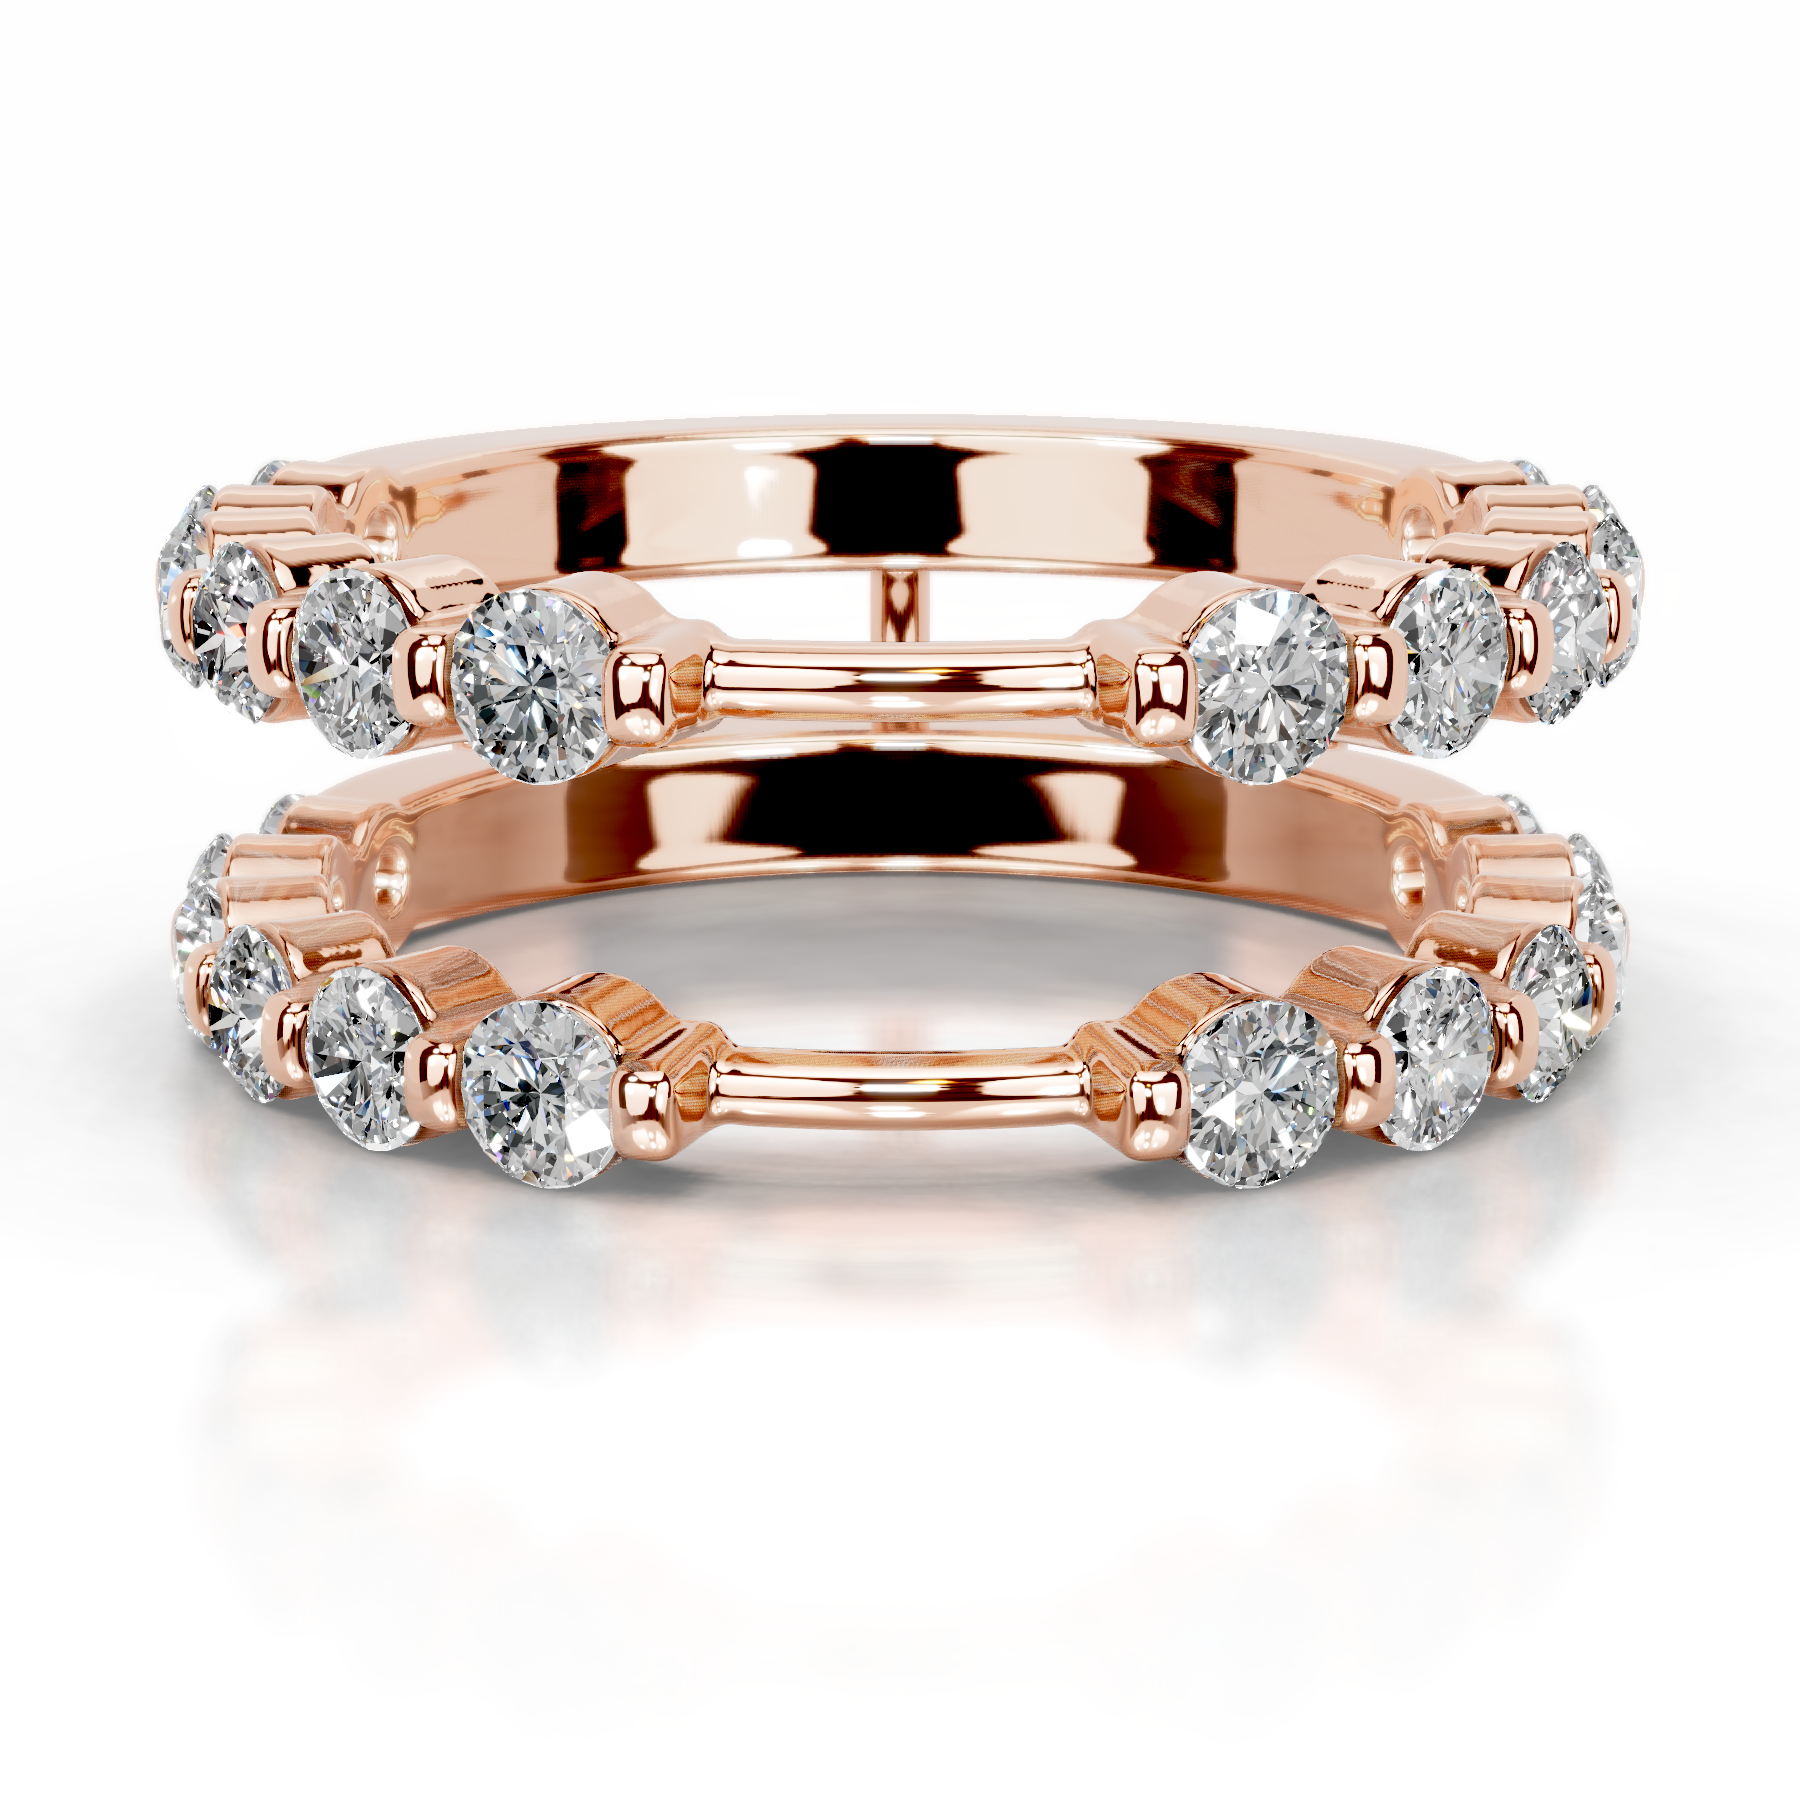 Ashley Lab Grown Diamond Wedding Ring   (1.25 Carat) -14K Rose Gold